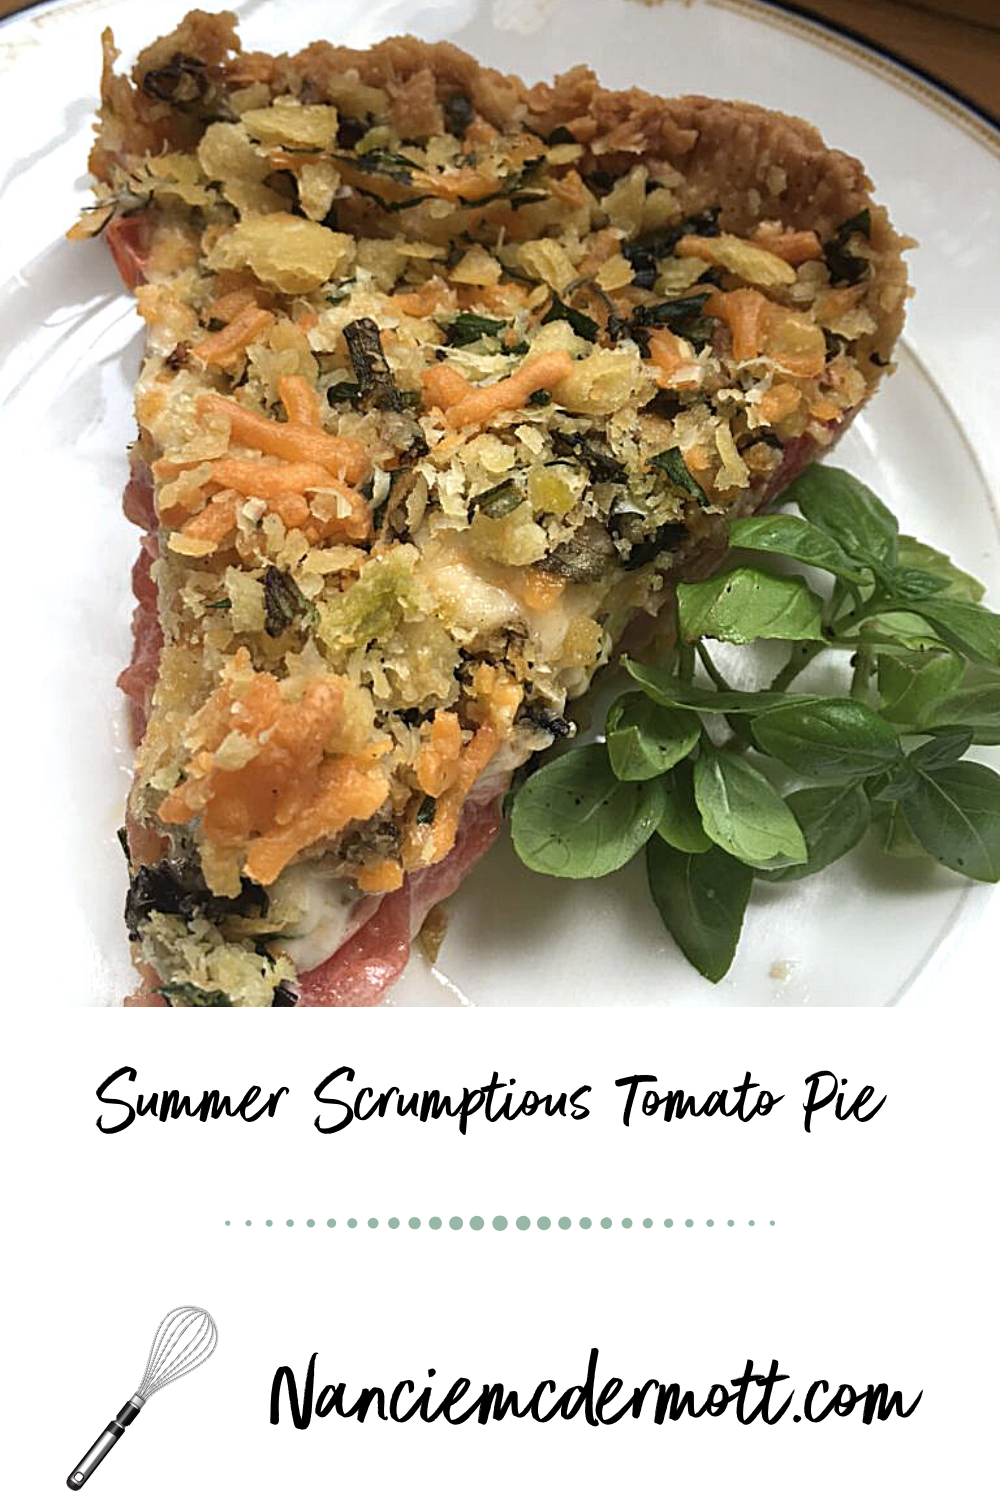 Summer Scrumptious Tomato Pie 